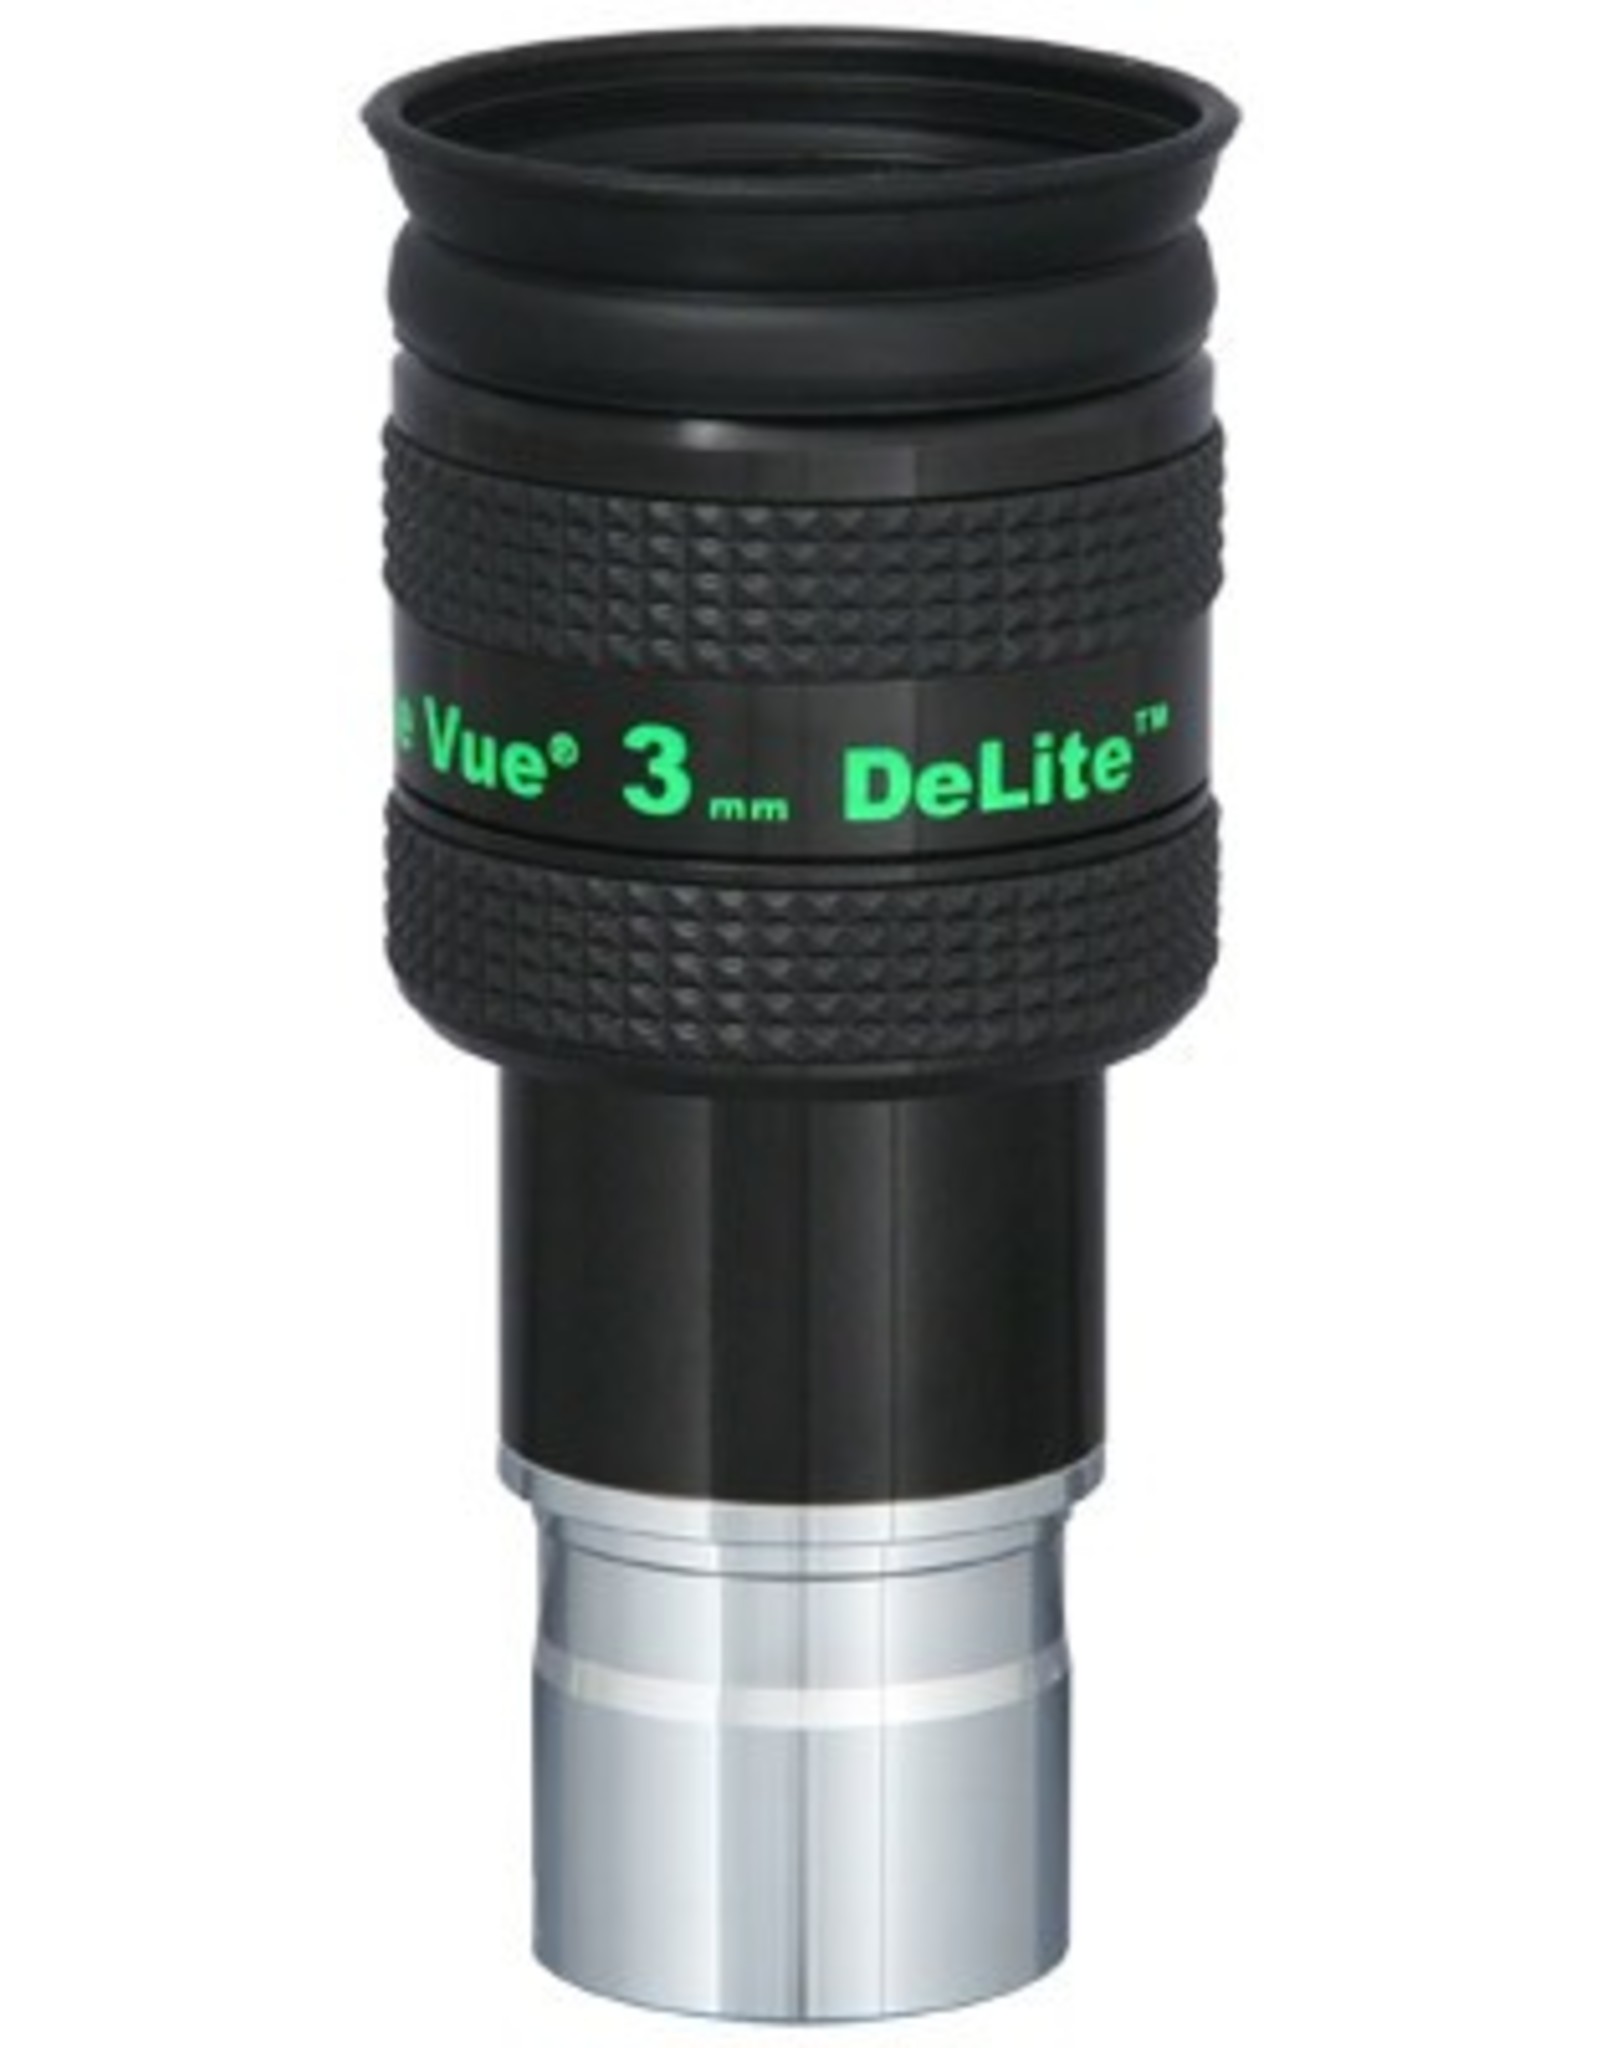 Televue DeLite 3mm Eyepiece 1.25"